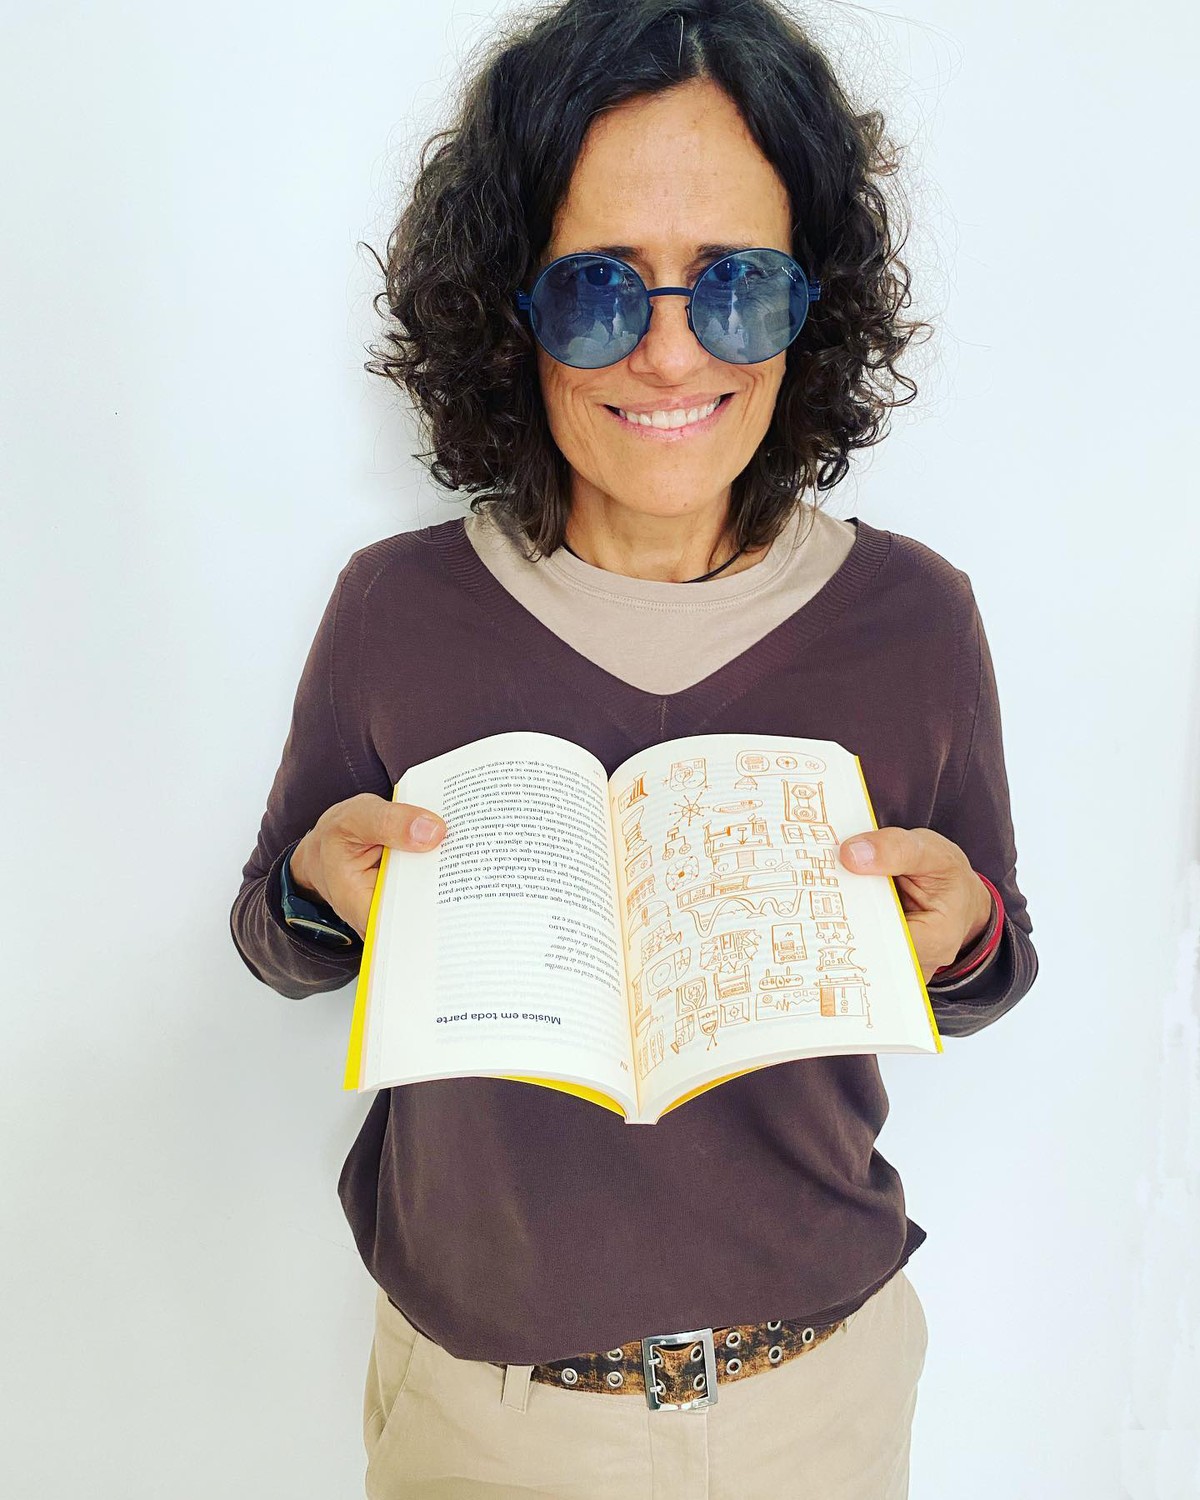 Zélia Duncan te pega pela palavra ao interligar os fios das memórias musicais em livro encantador |  Weblog do Mauro Ferreira